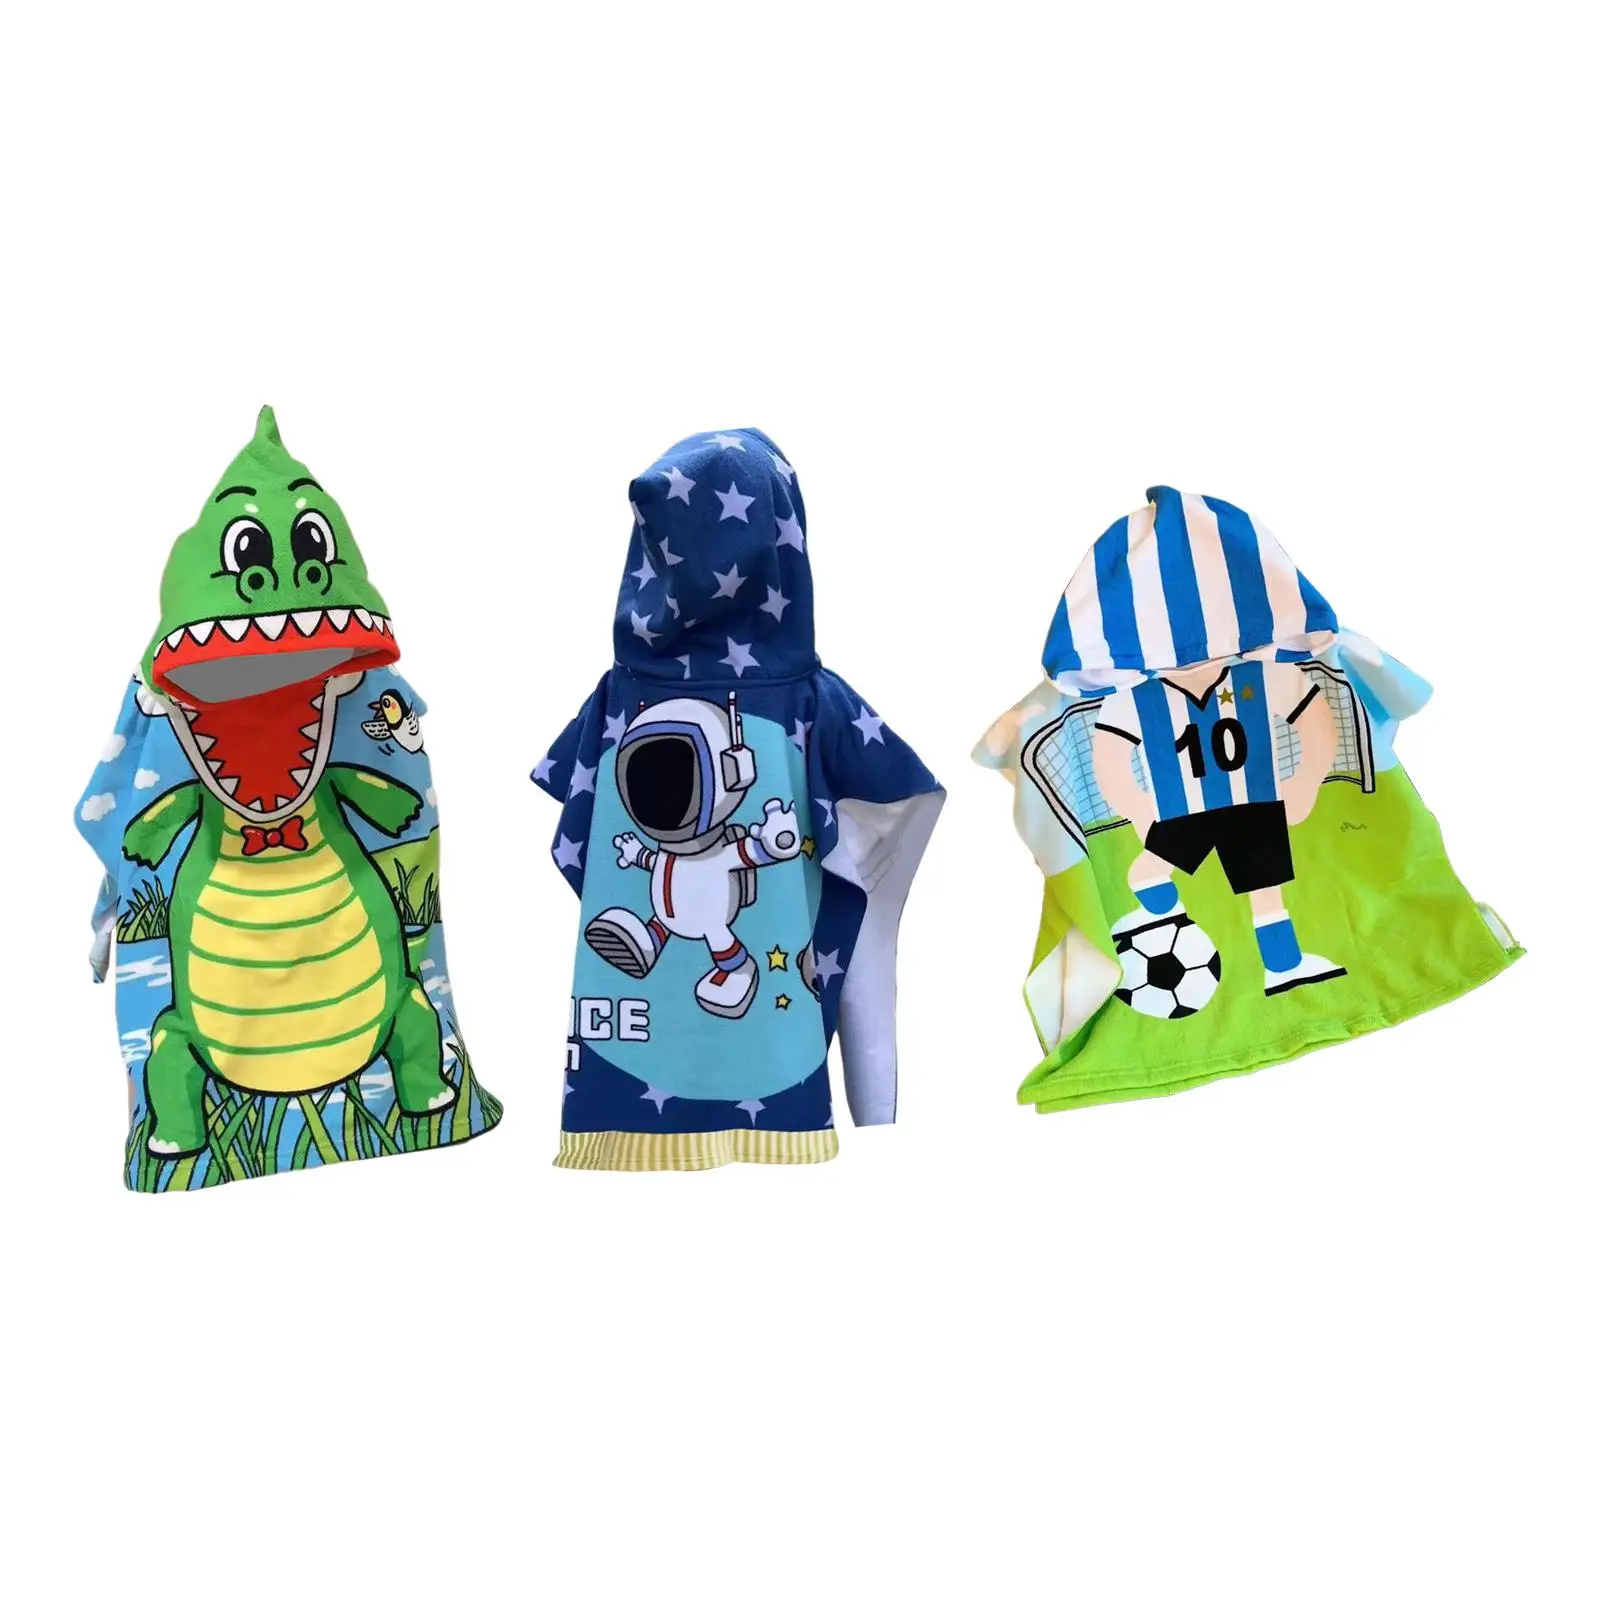 Kids Hooded Bathrobe Lovely Sleepwear Soft Hooded Bathrobe for Water Sports Children